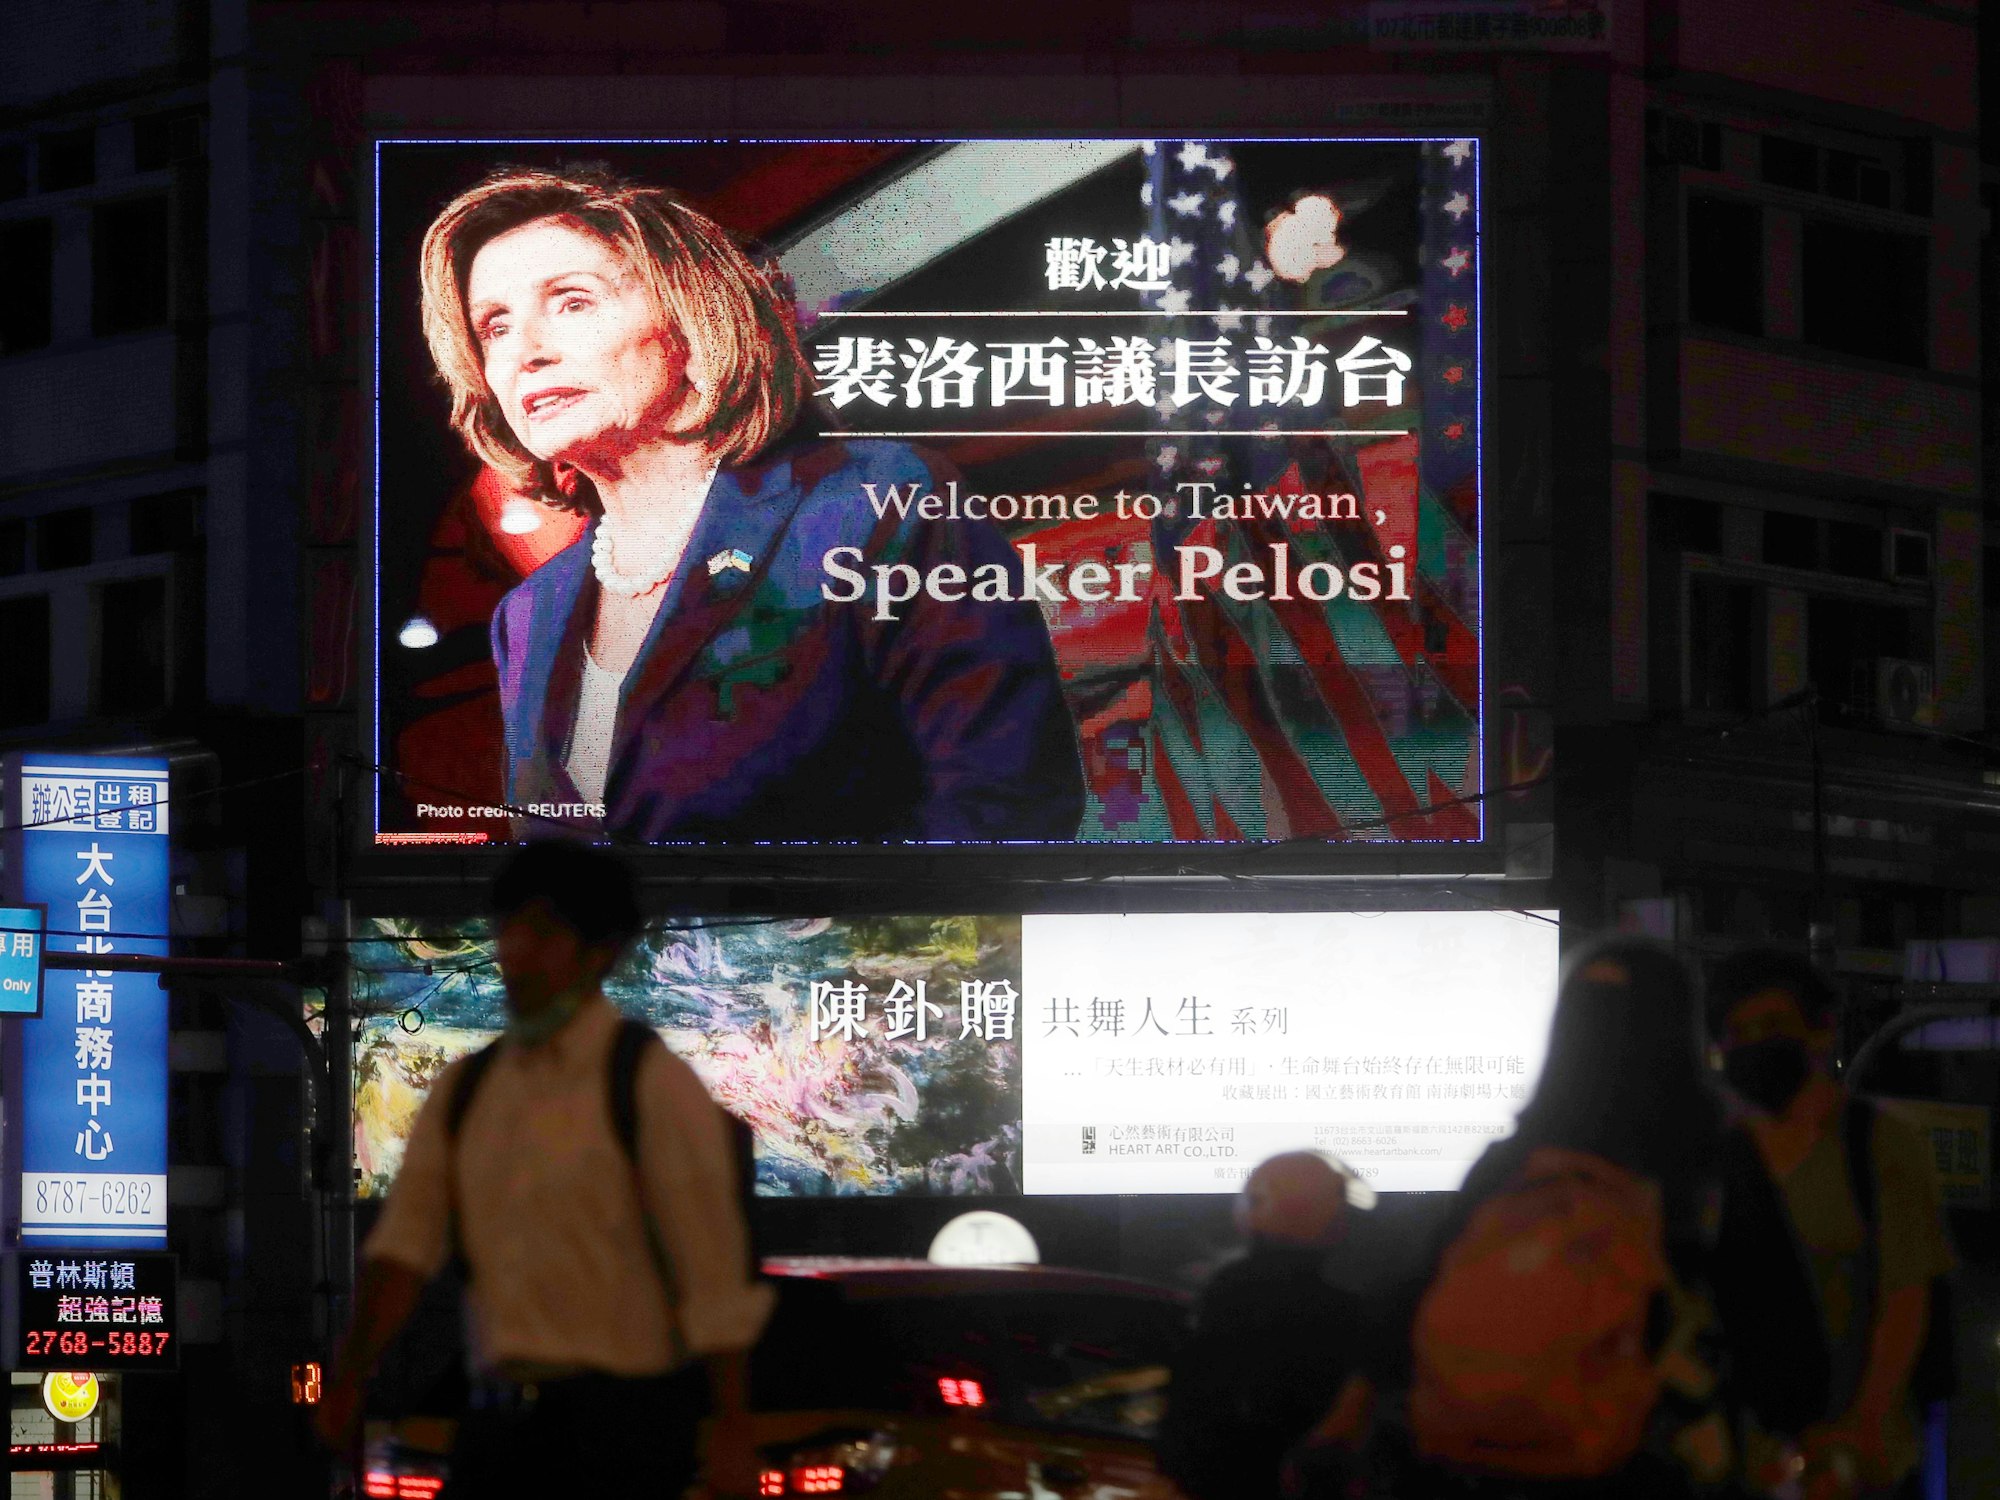 Menschen gehen am 2. August an einem Plakat in Taipeh vorbei, das die Sprecherin des US-Repräsentantenhauses, Nancy Pelosi, in Taiwan willkommen heißt.